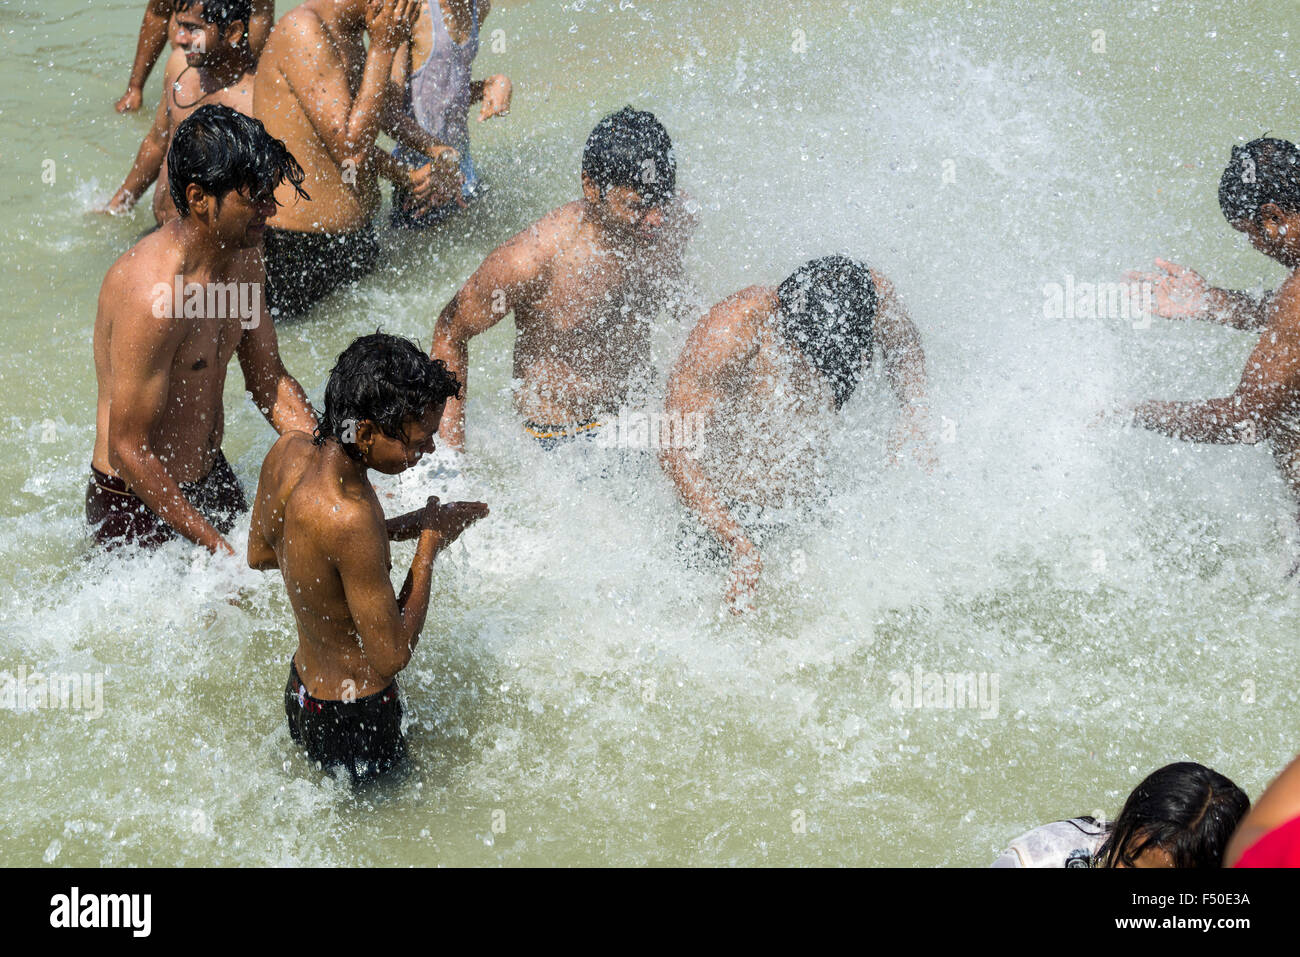 Les pèlerins sont des projections d'eau et baignade à harki pauri ghat au fleuve saint Ganges Banque D'Images